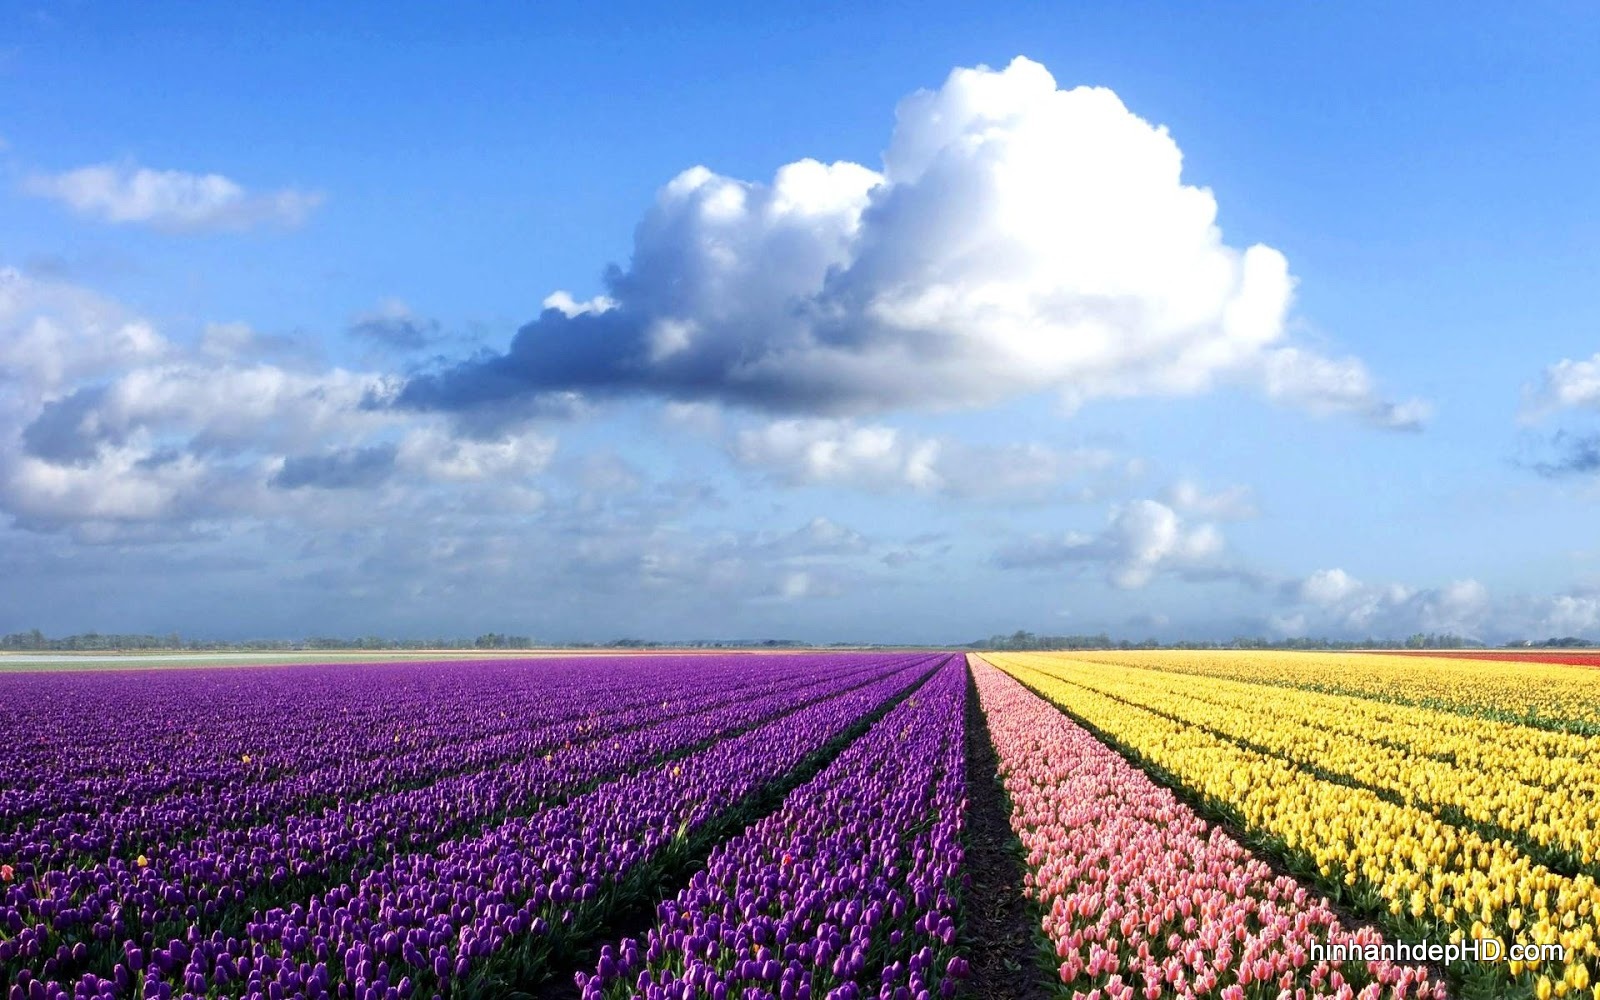 Hình nền Hoa Tulip đẹp với những cánh đồng đầy màu sắc - Hình Ảnh ...